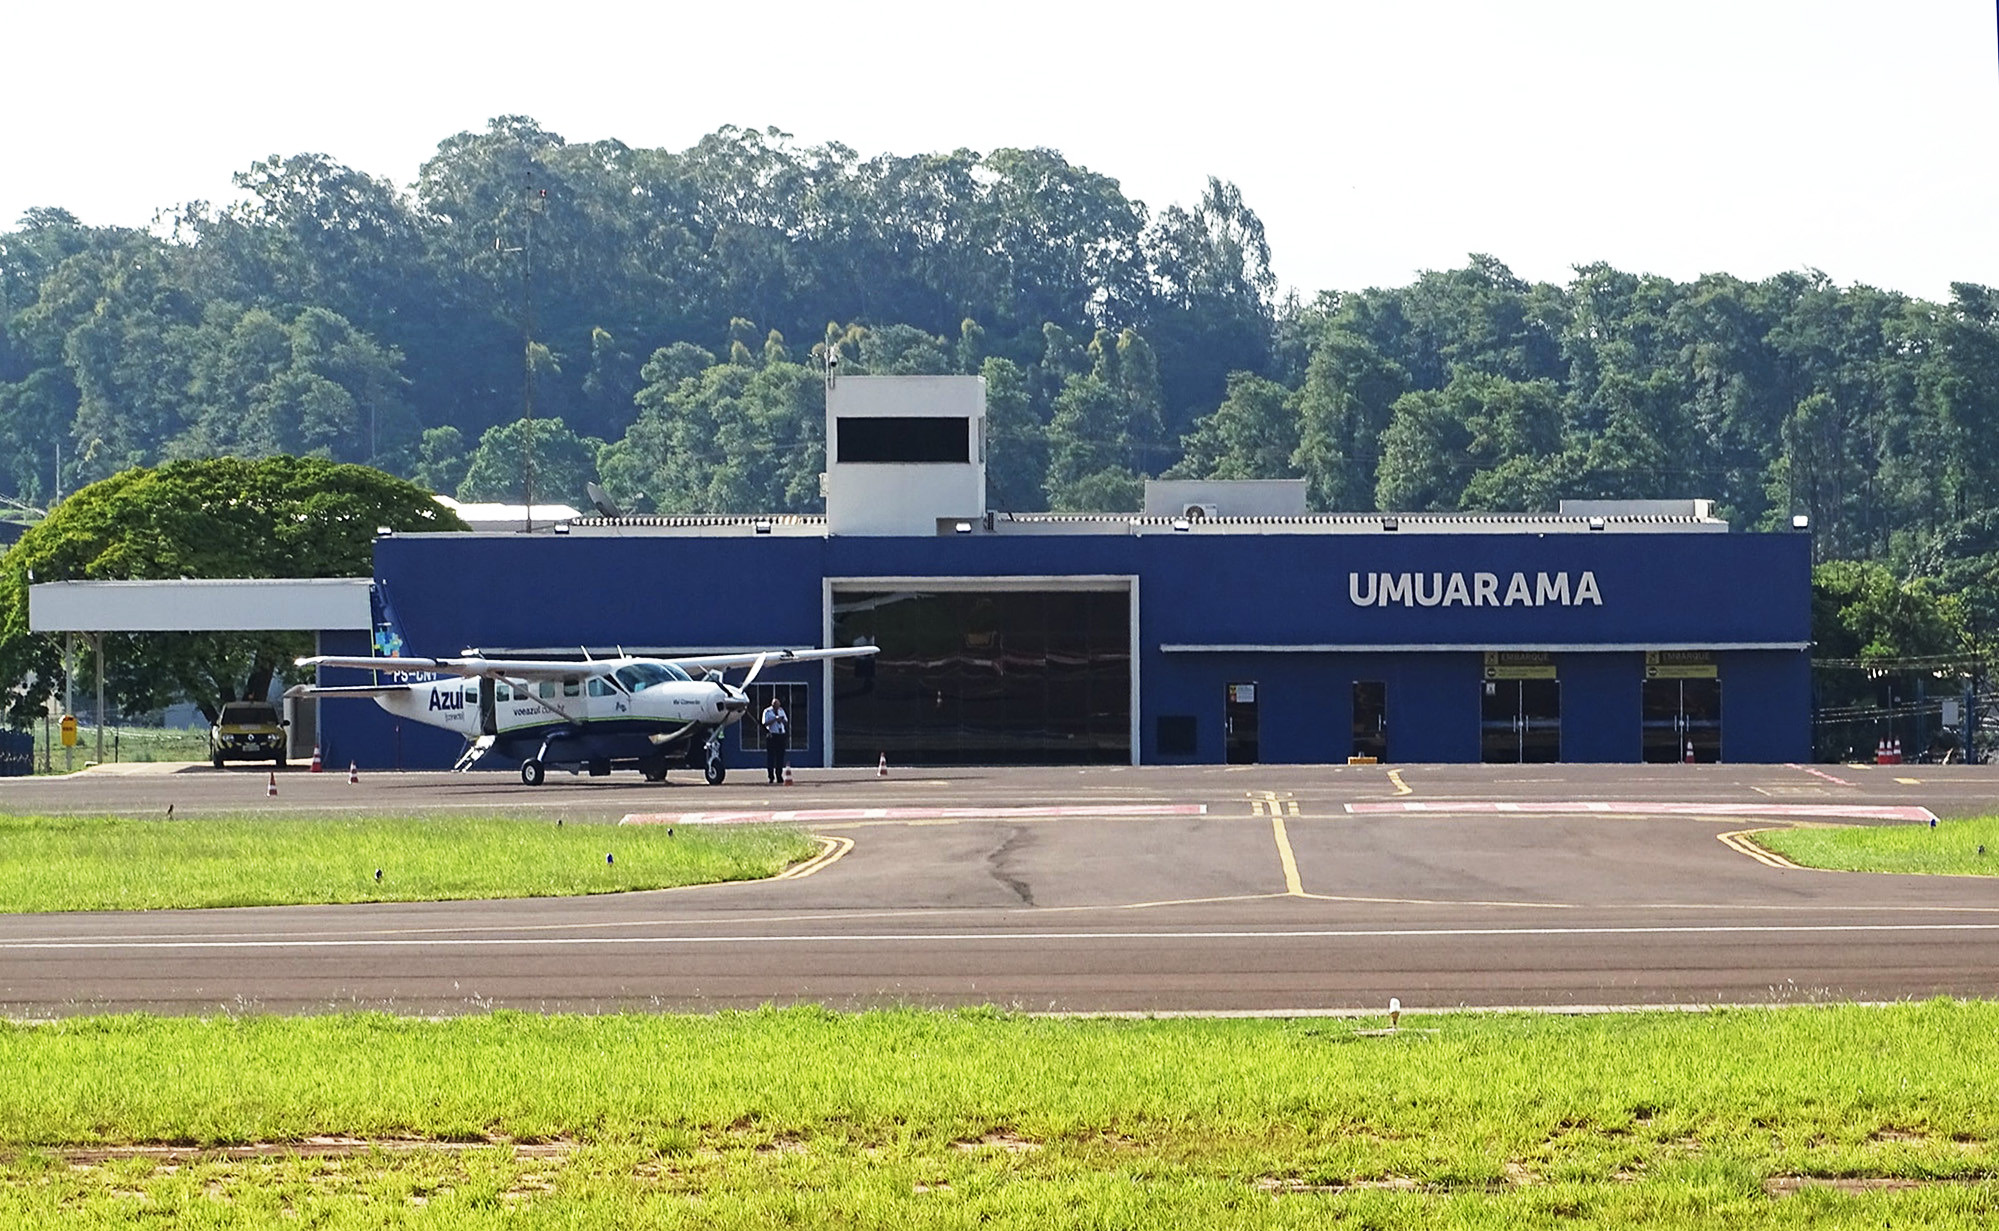 Jornal Ilustrado - Portaria suspende contrato entre município e empresa que gerenciava o aeroporto